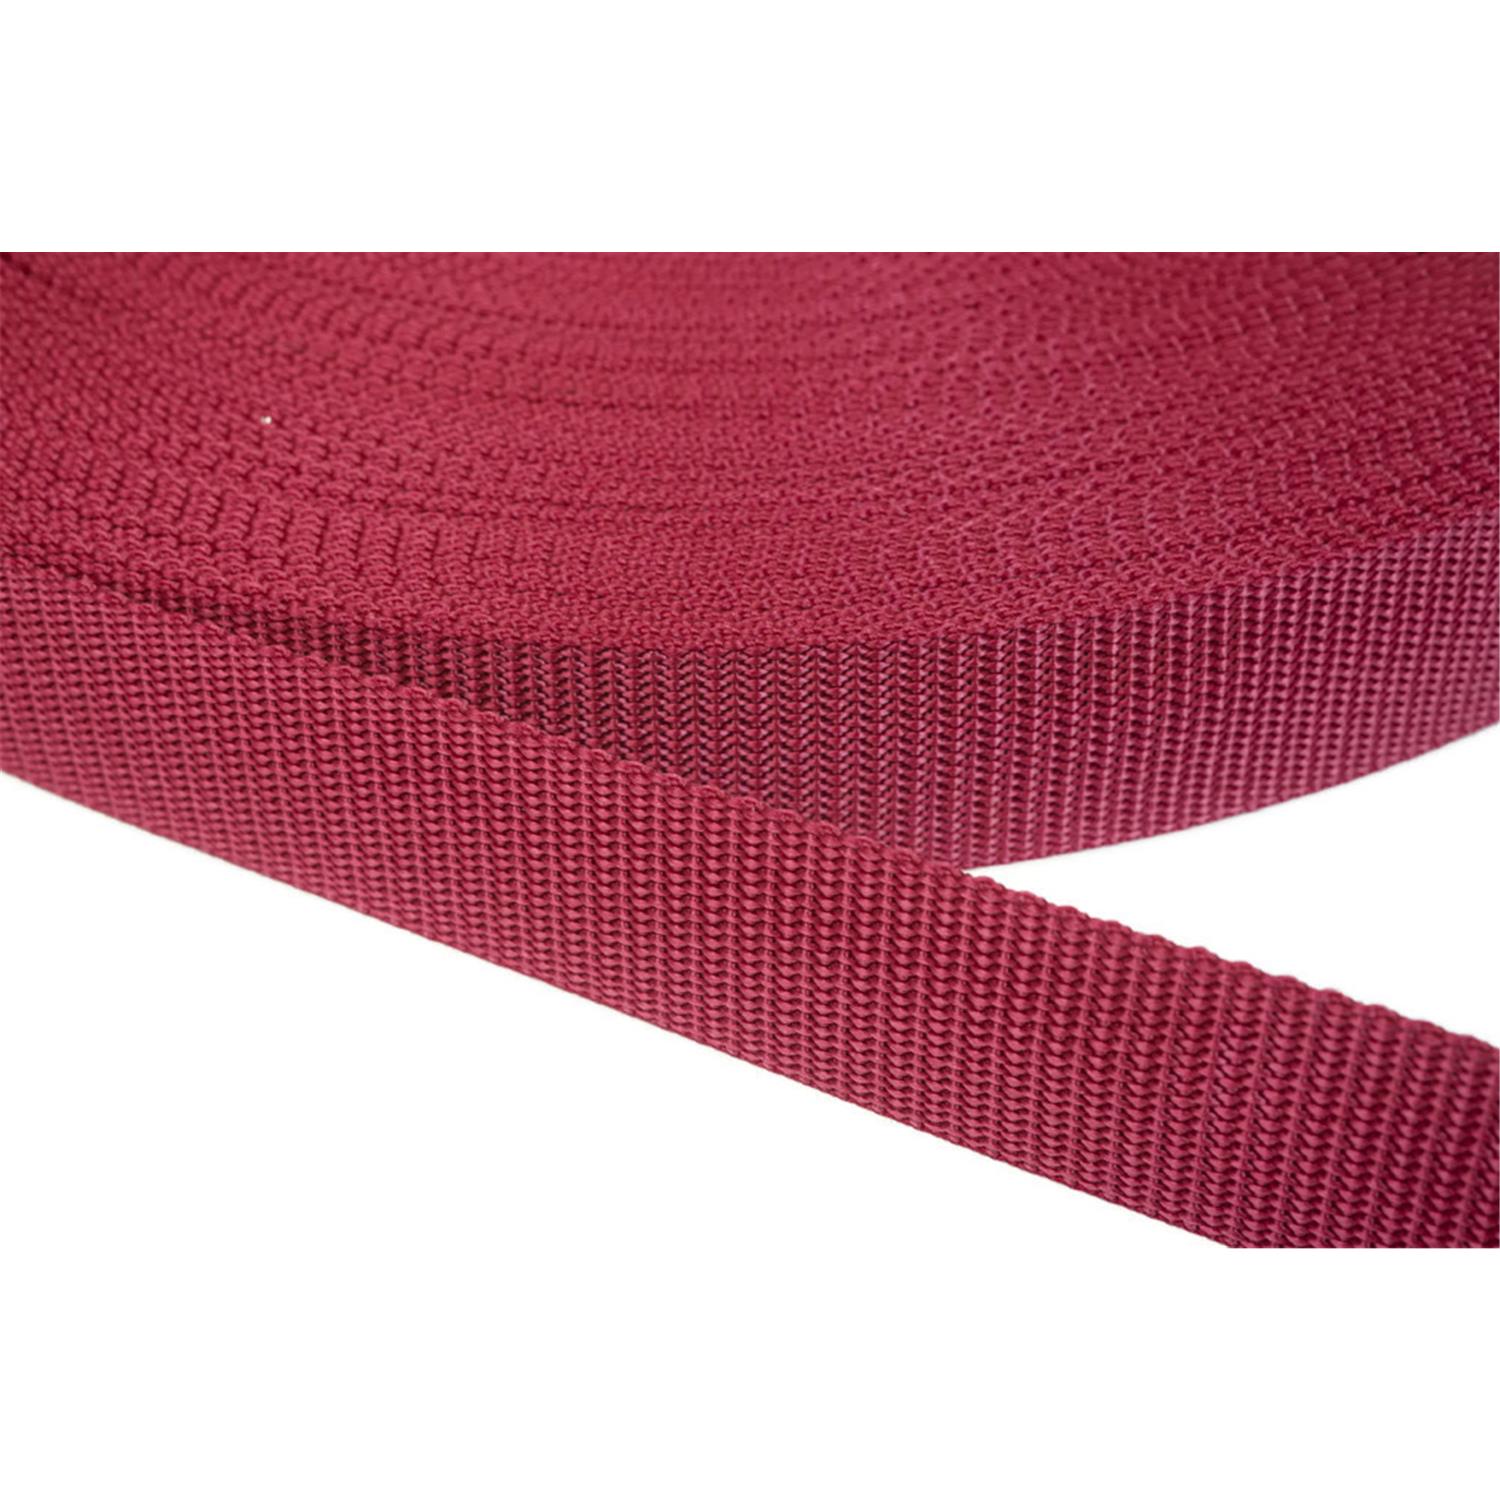 Gurtband 25mm breit aus Polypropylen in 41 Farben 20 - ziegelrot 6 Meter